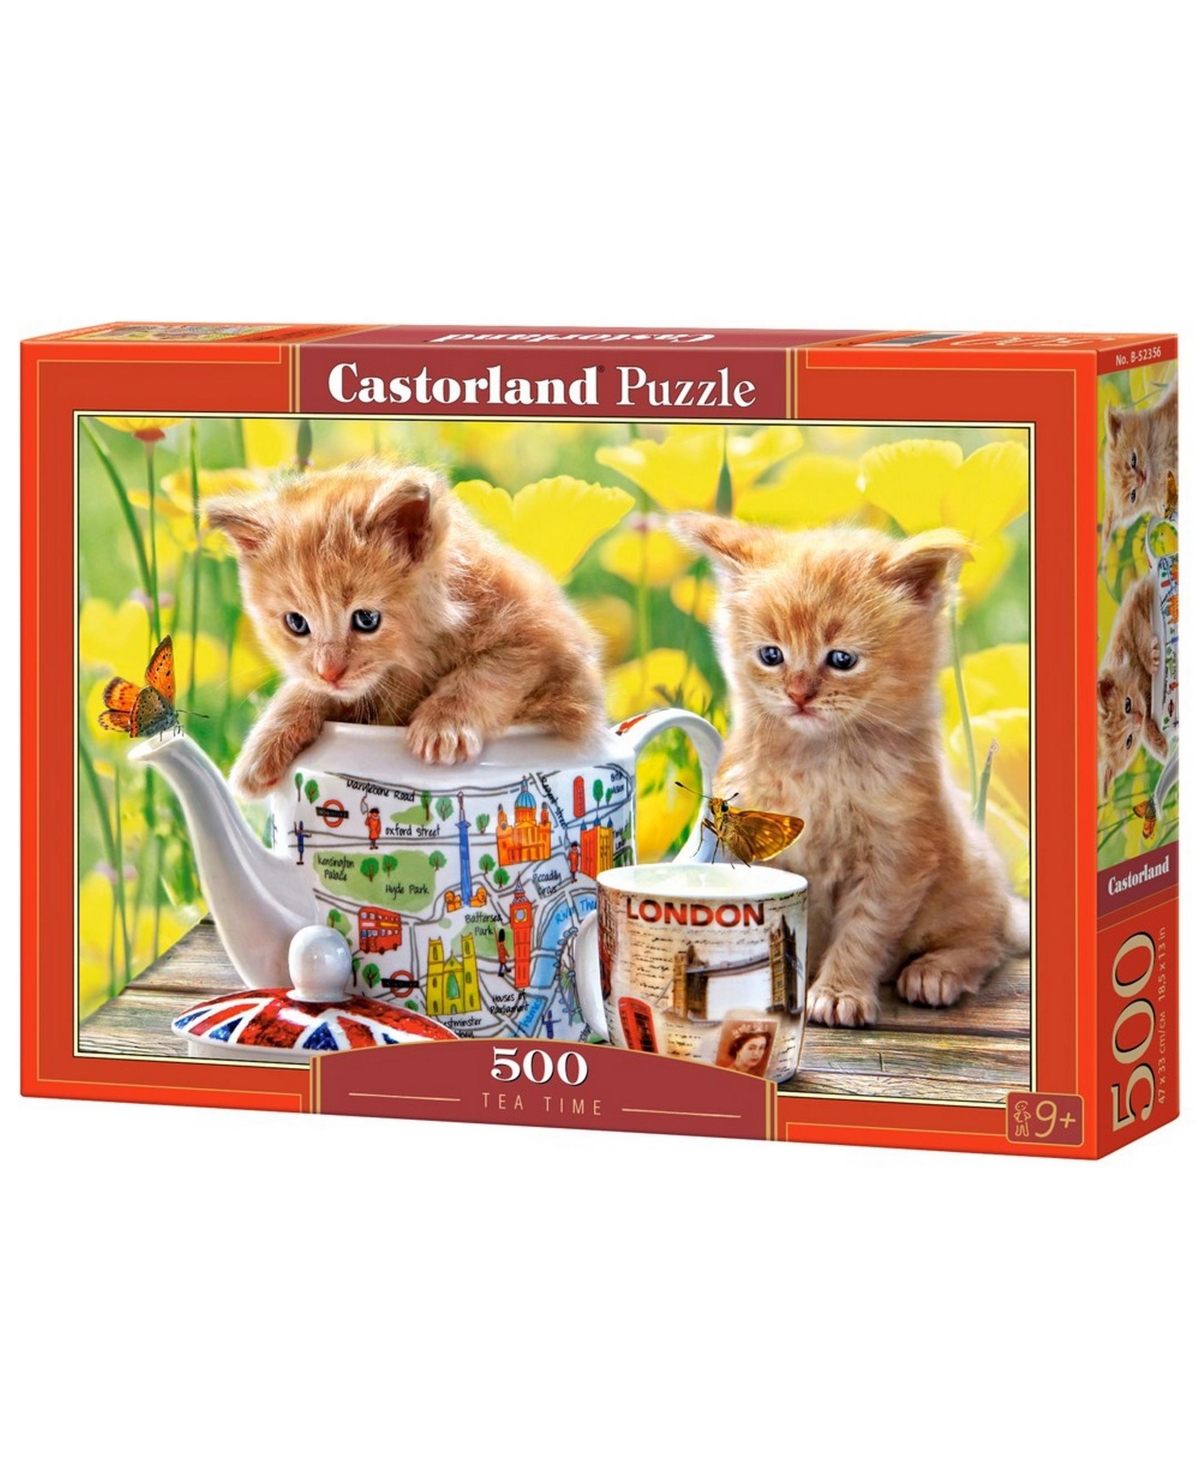 Castorland Kids' Tea Time Jigsaw Puzzle Set, 500 Piece In Multicolor